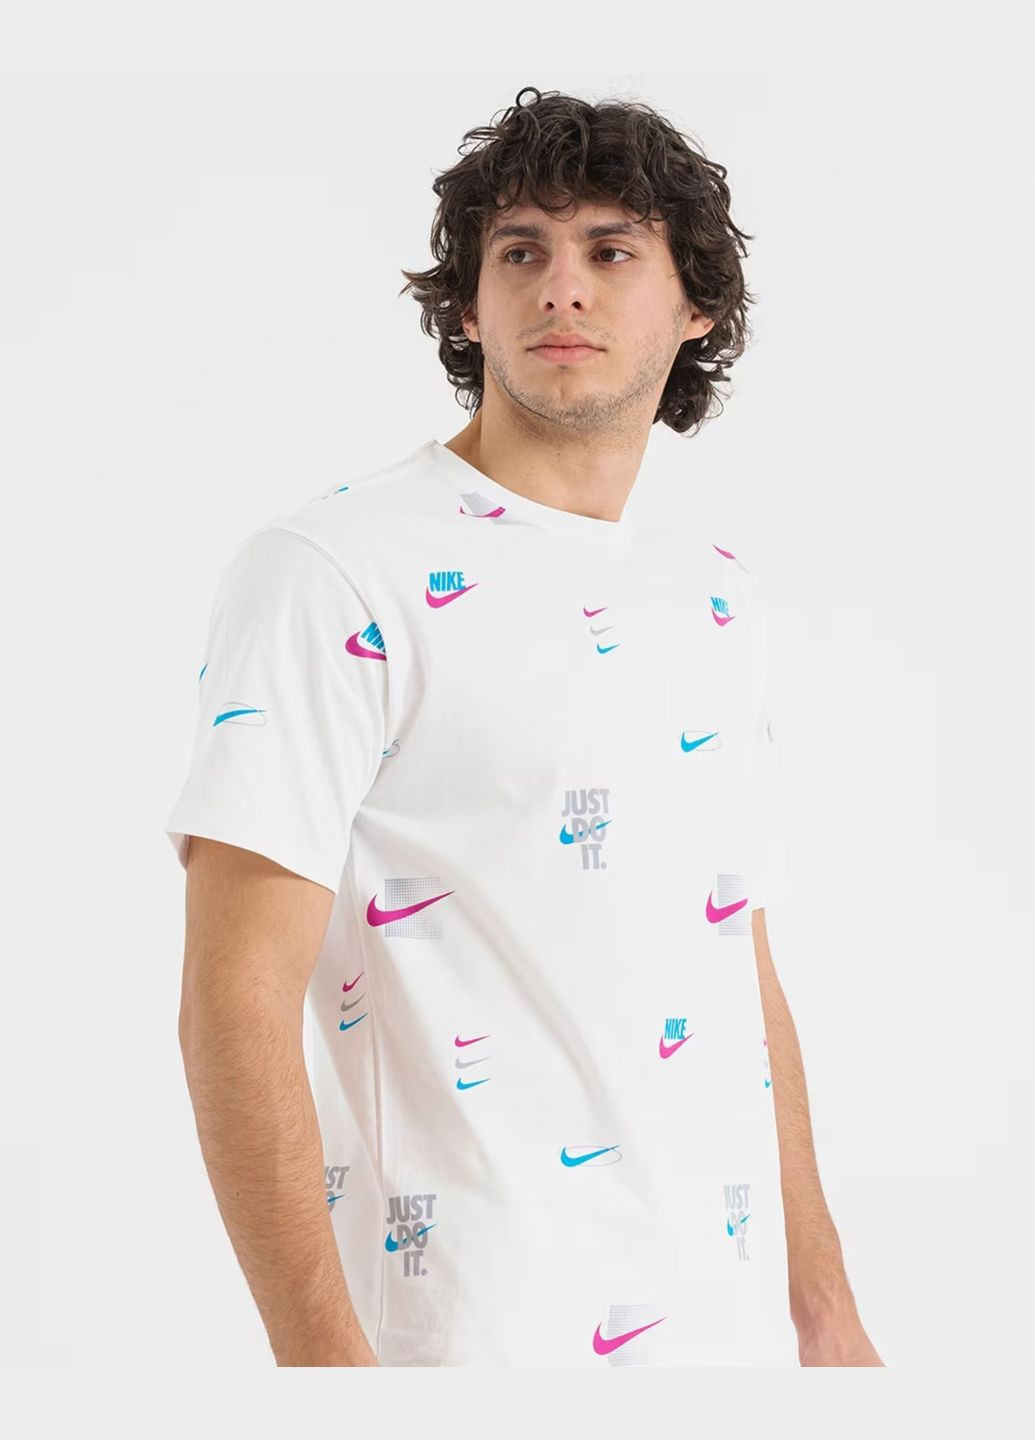 Біла футболка чоловіча tee m90 12mo lbr aop dz2991-100 біла Nike